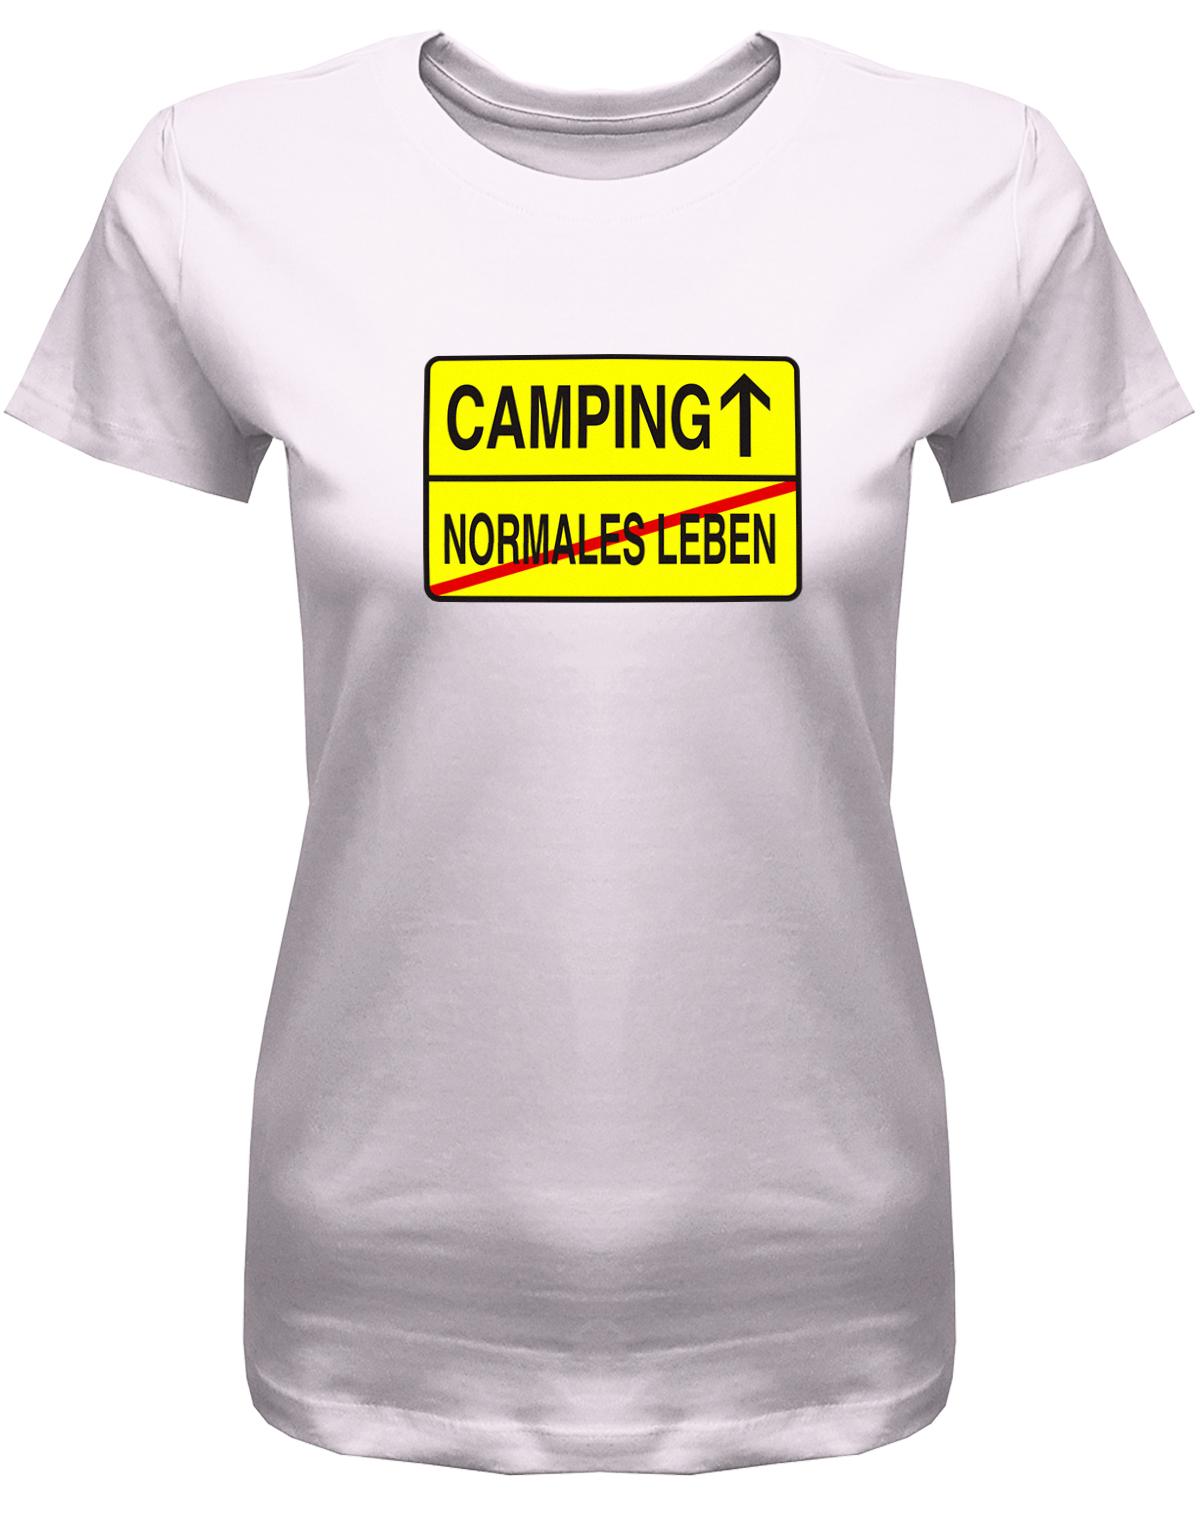 Camping-Normales-leben-Ortschild-Damen-Camping-Shirt-Rosa